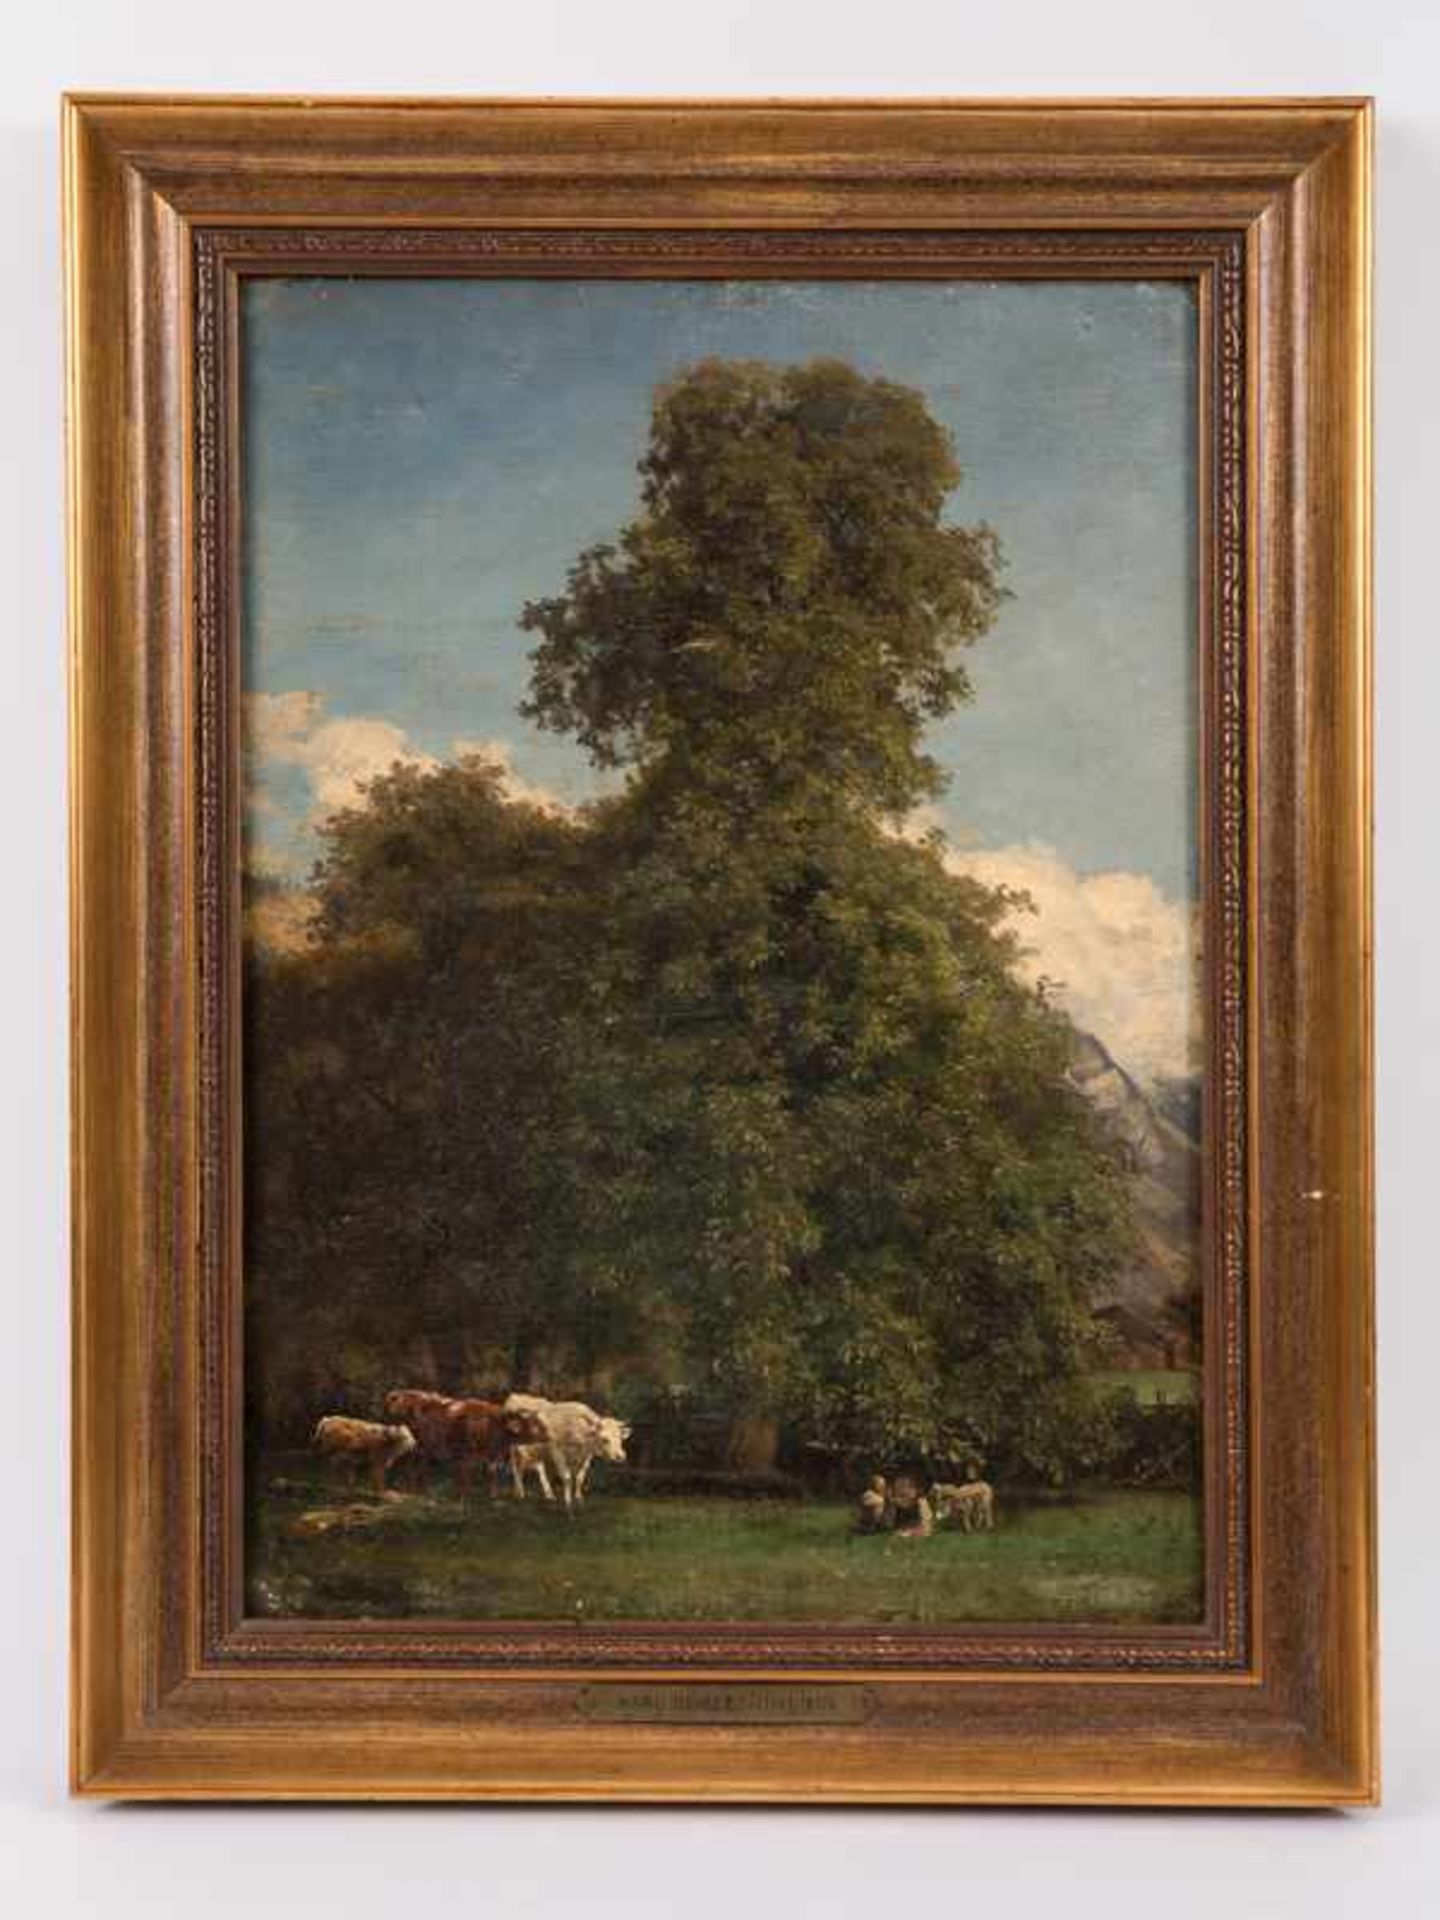 Seibels, Carl (1844 - 1877). Öl auf Holz, "Kuhherde mit rastenden Hirten und Schafen auf der Weide